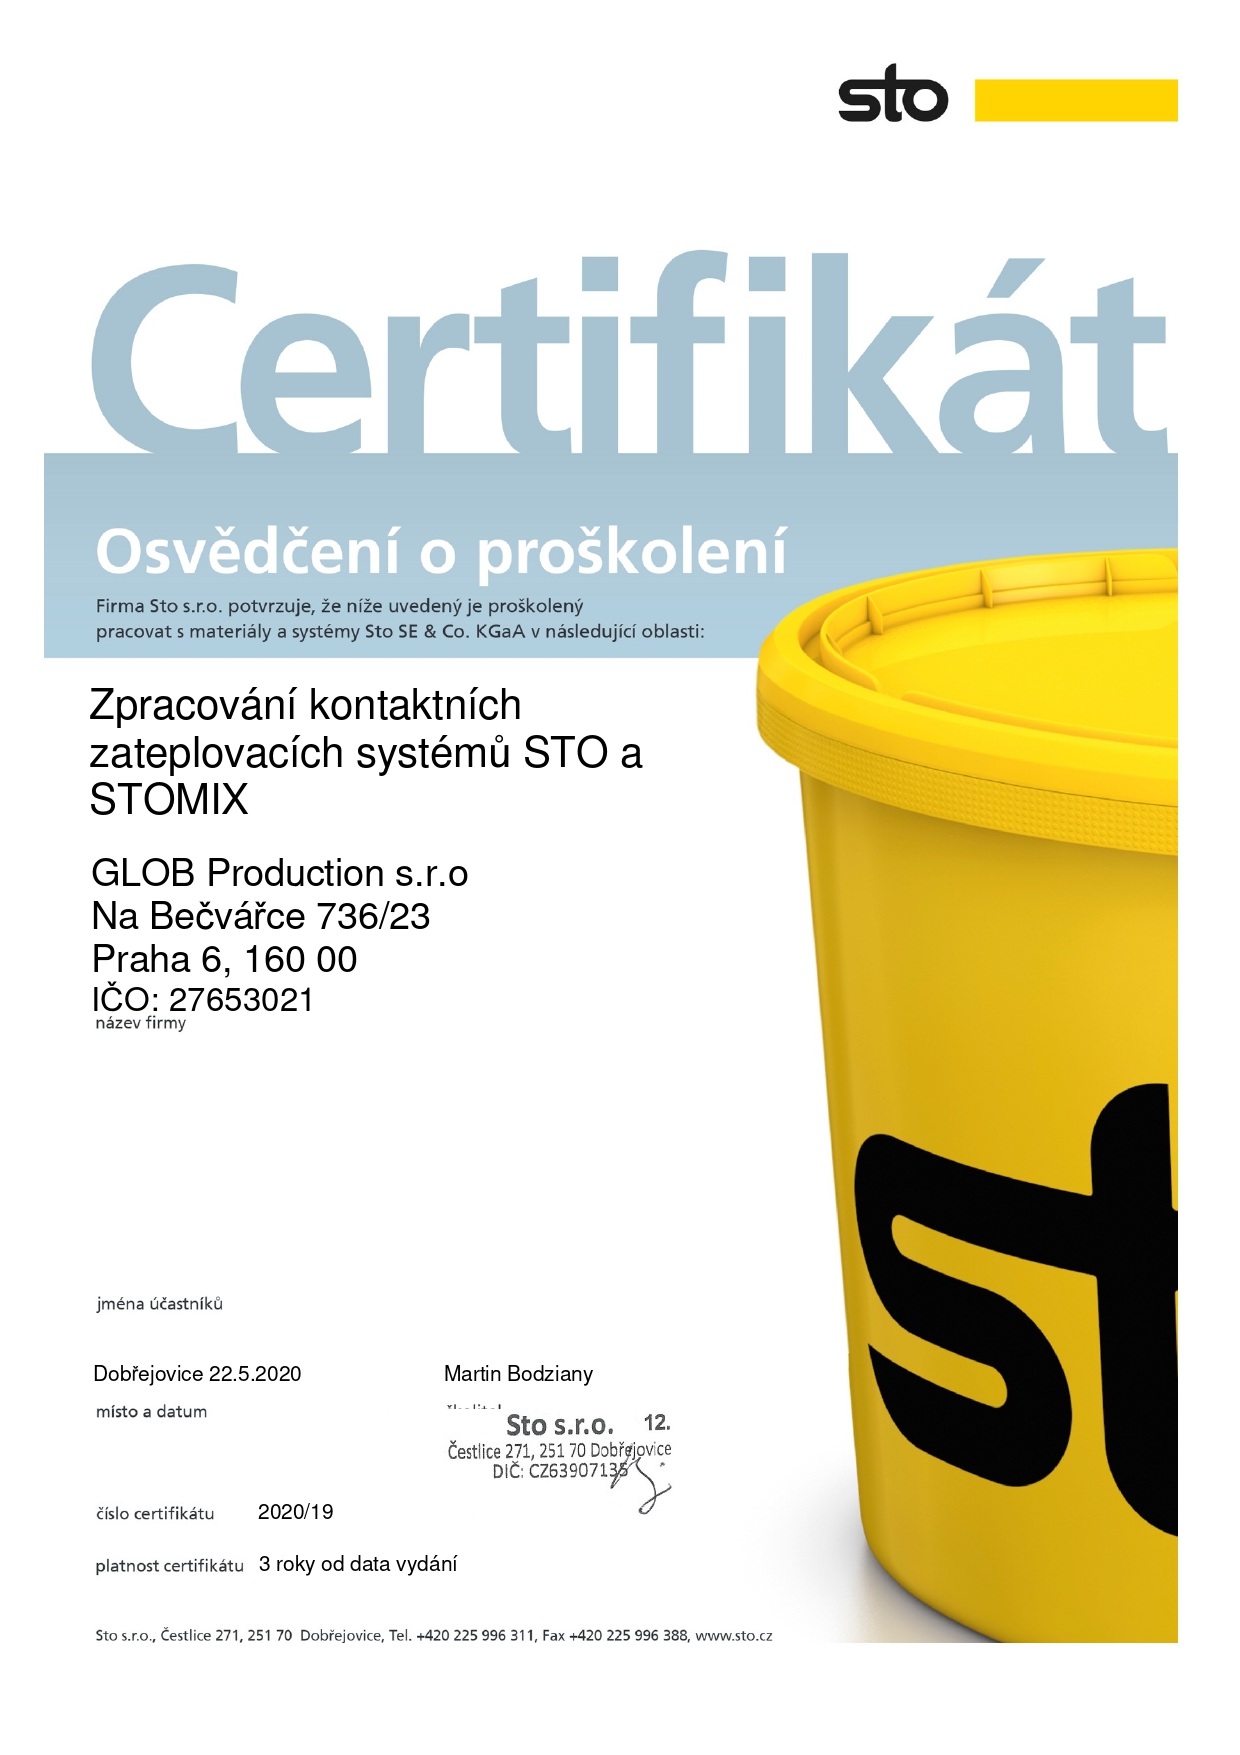 Certifikát STO a STOMIX